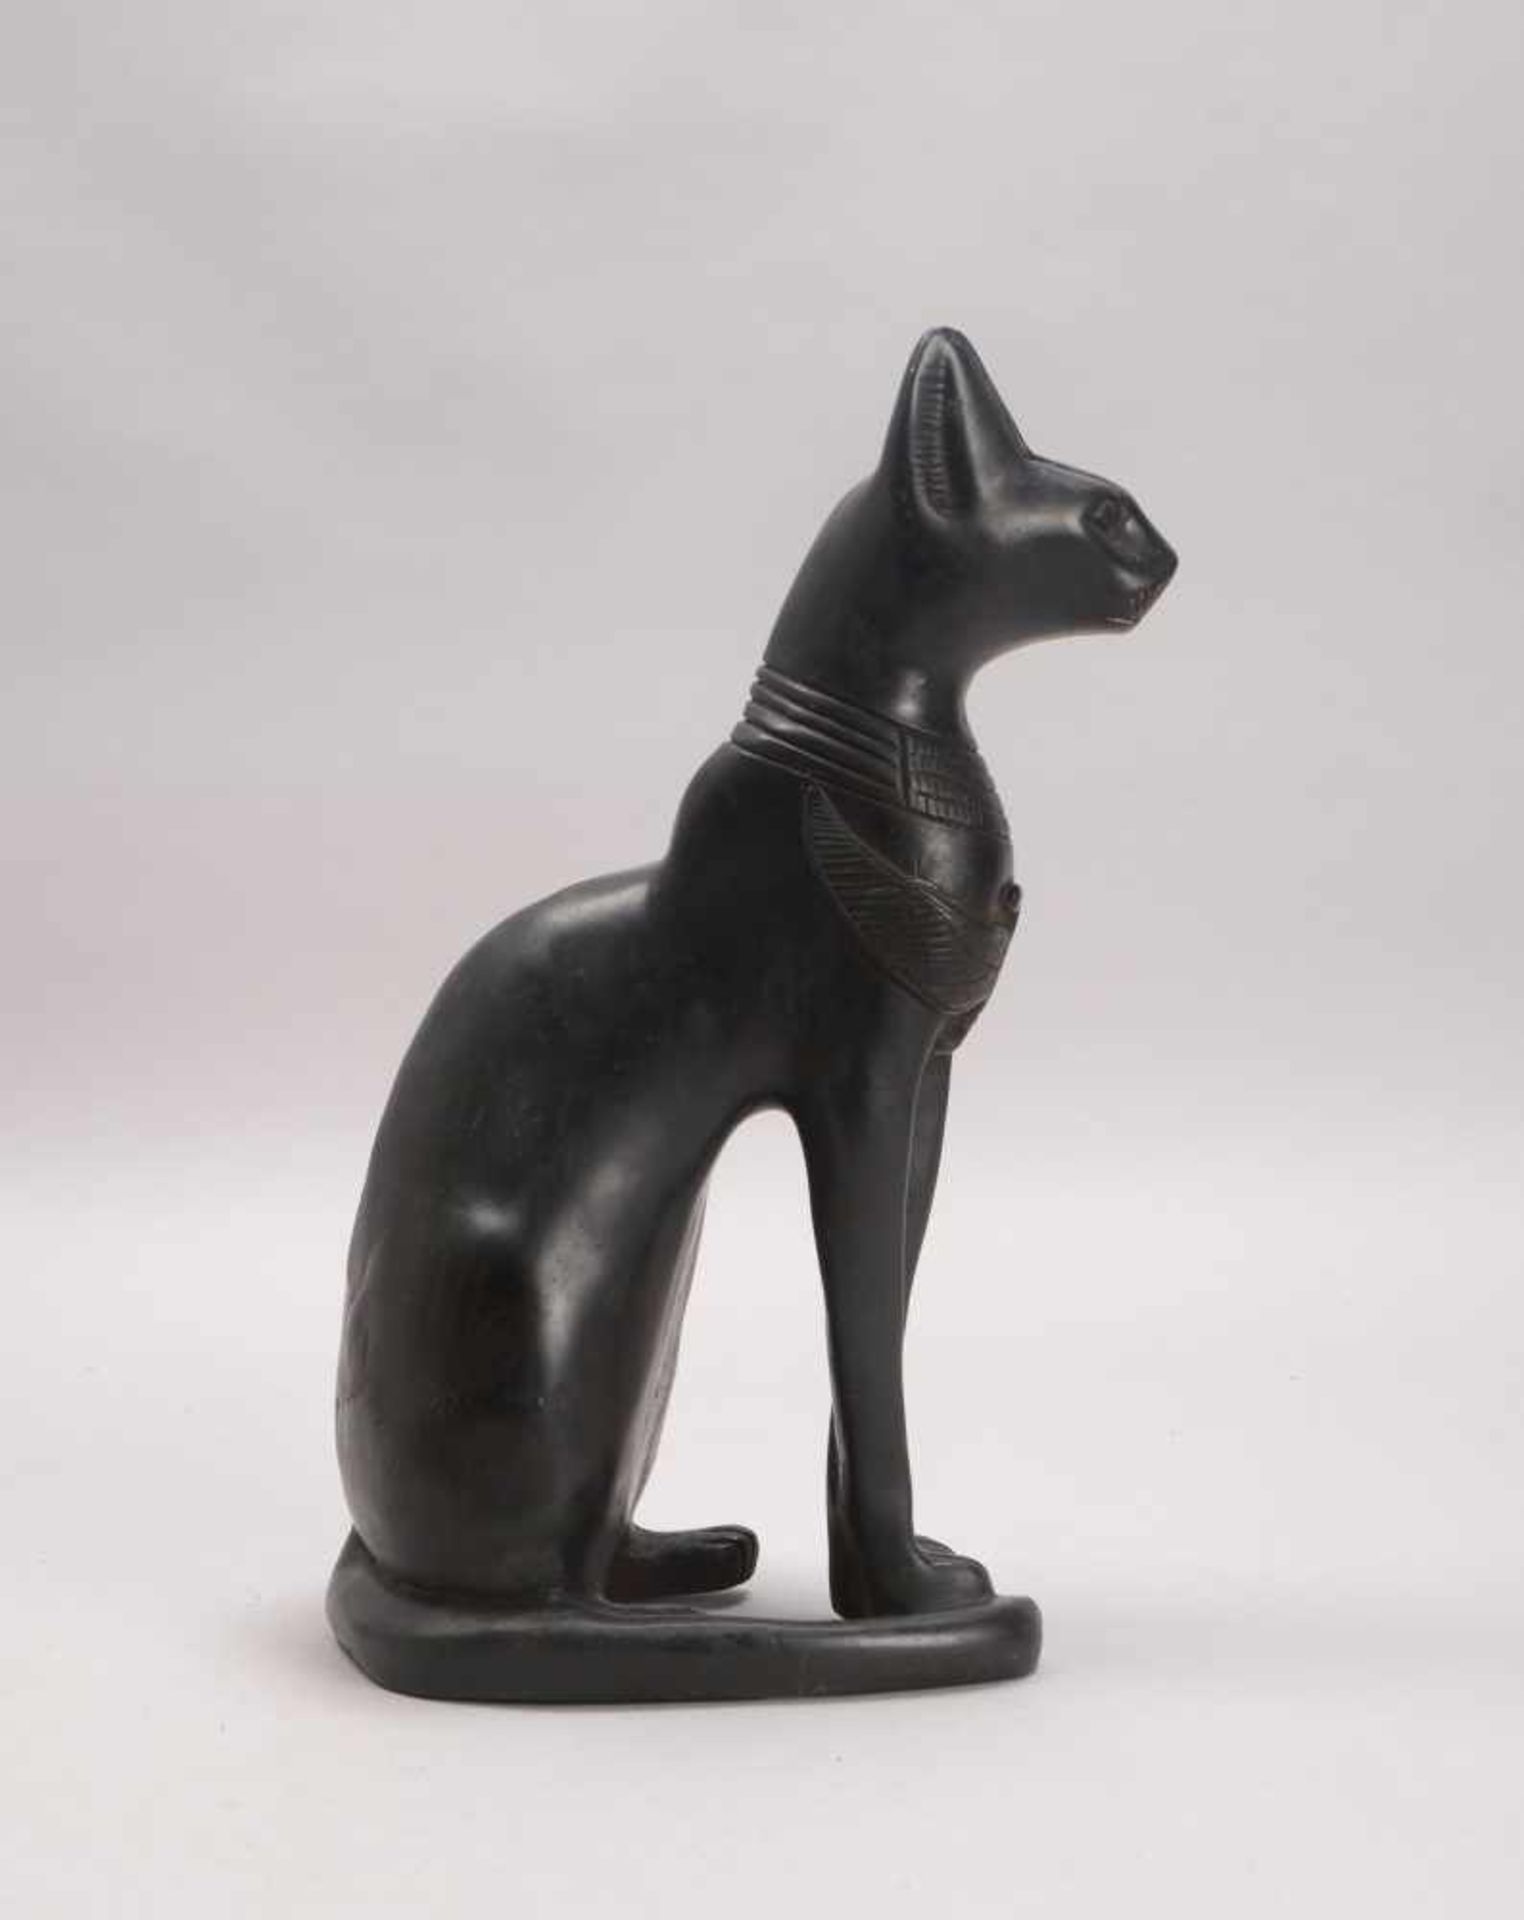 Tierskulptur (Ägypten), 'Katze', schwerer Eisenguss(?), schwarz lackiert; Höhe 38 cm, Gewicht 7 kg - Bild 2 aus 2